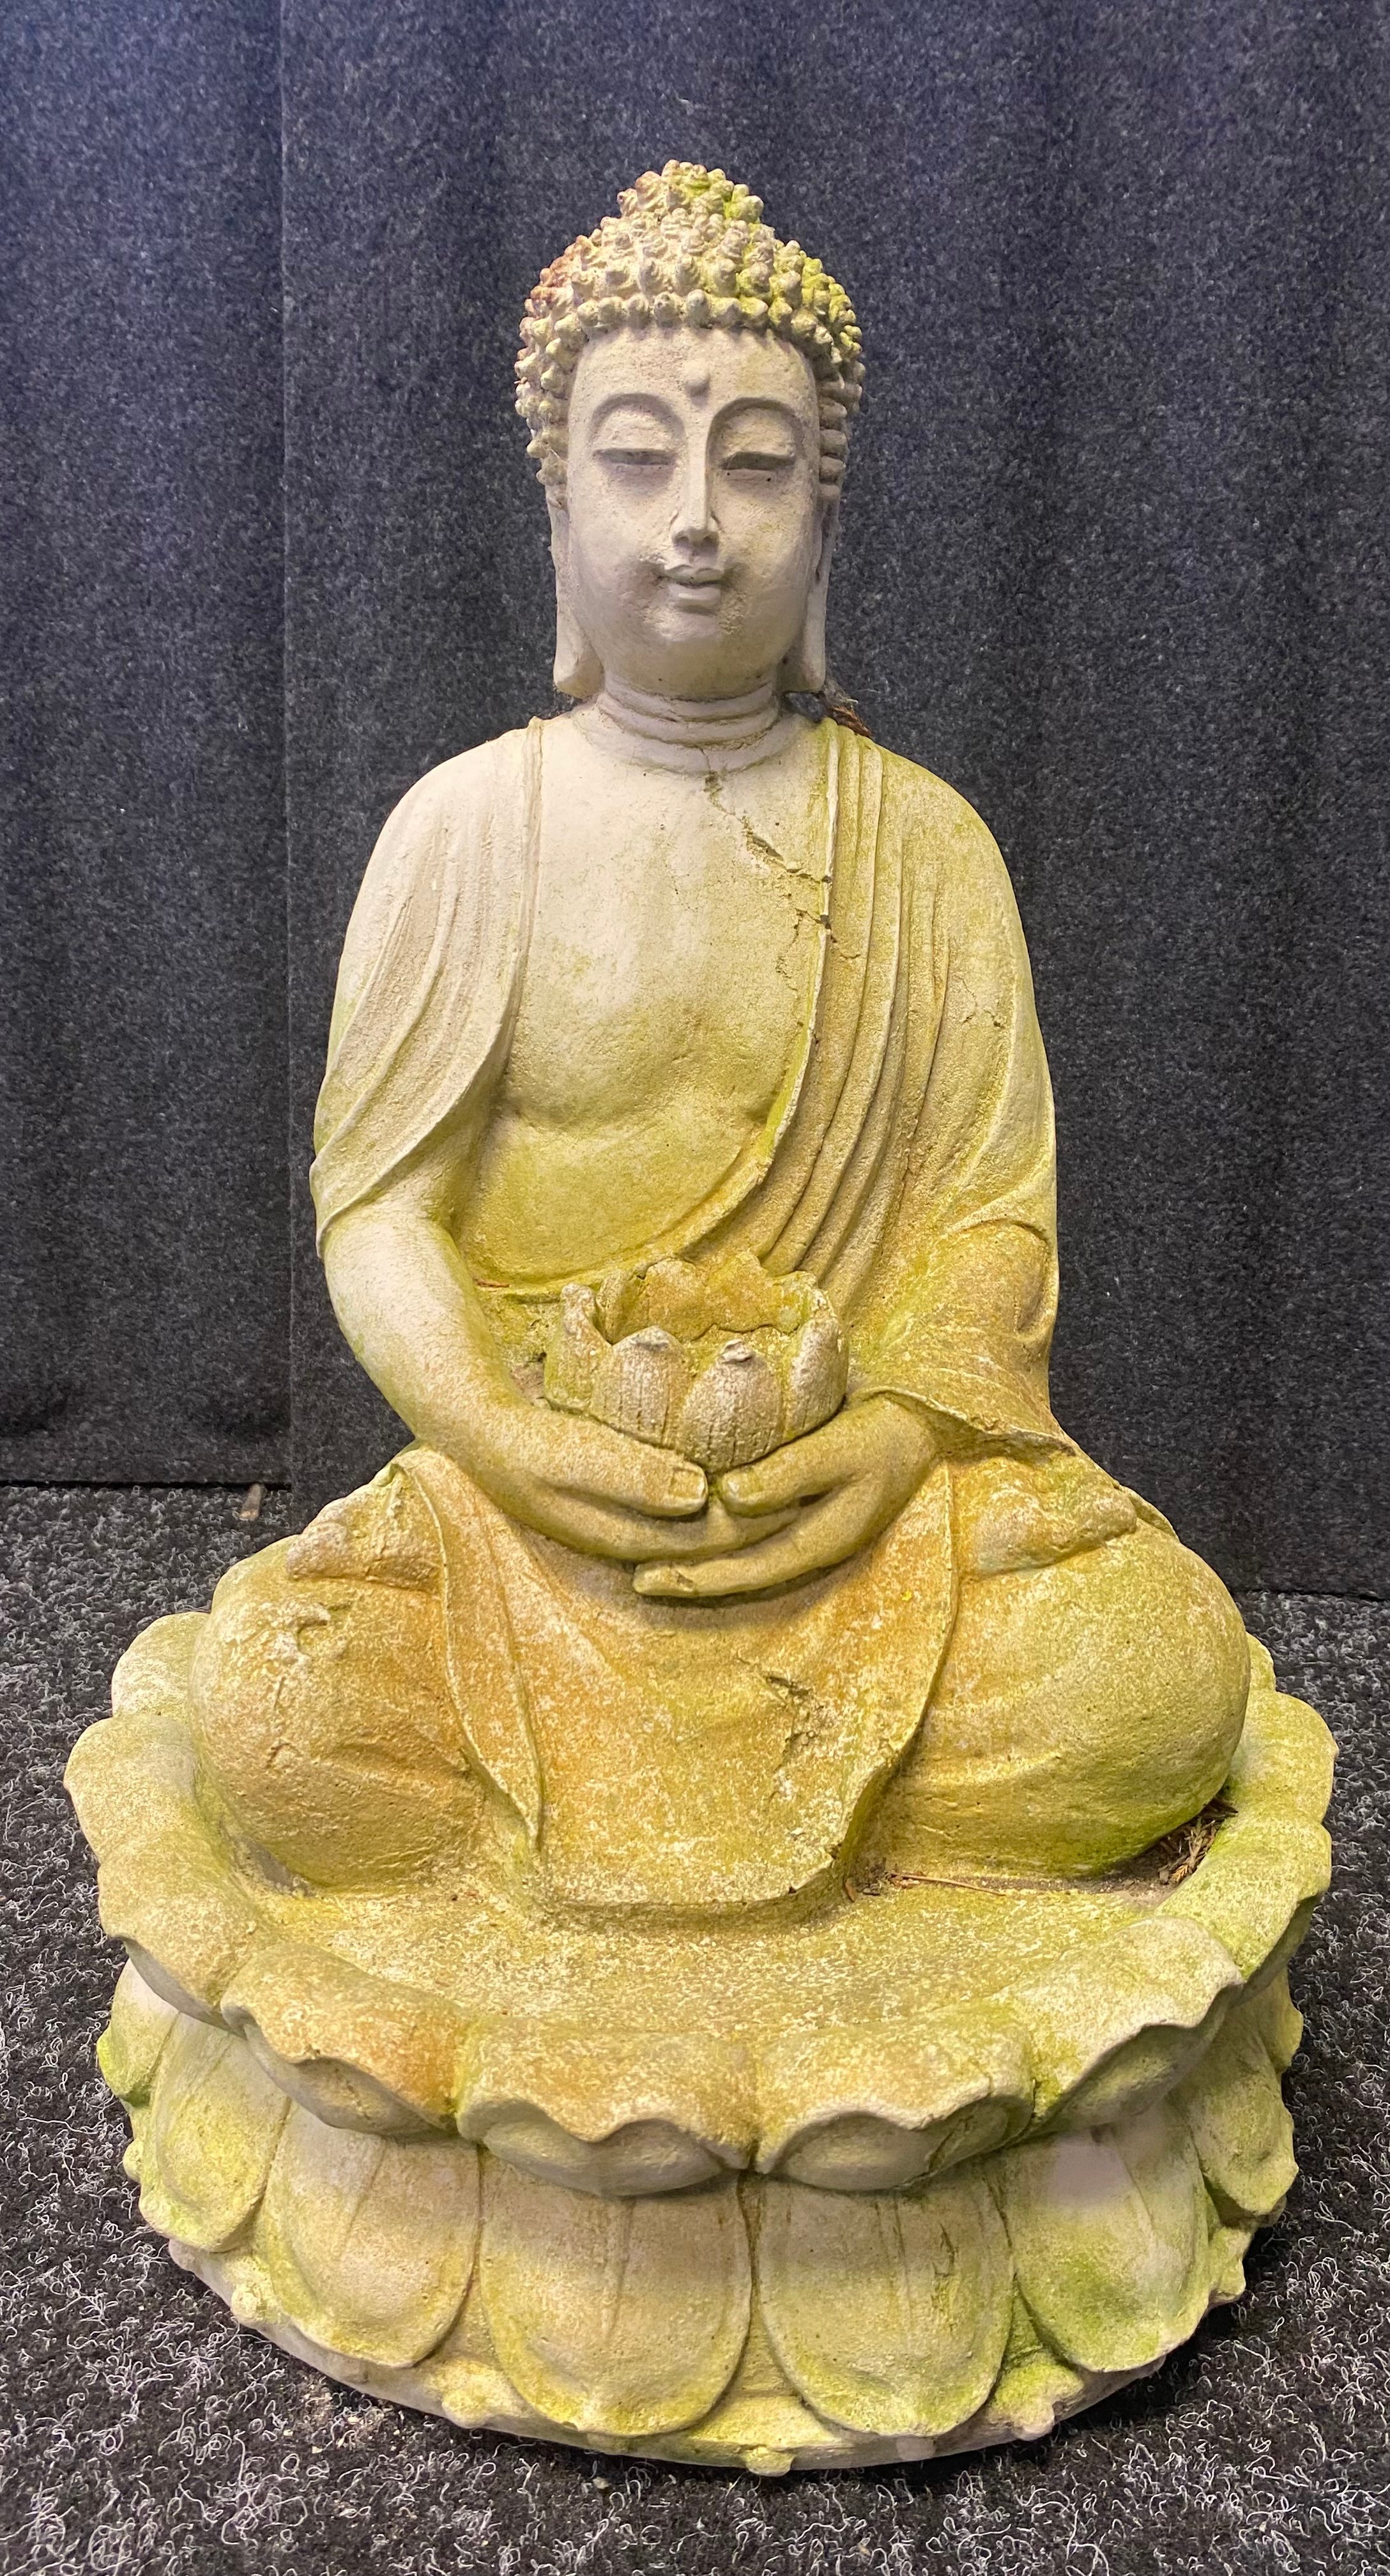 Garden Thai Buddha ornament [18inches high]